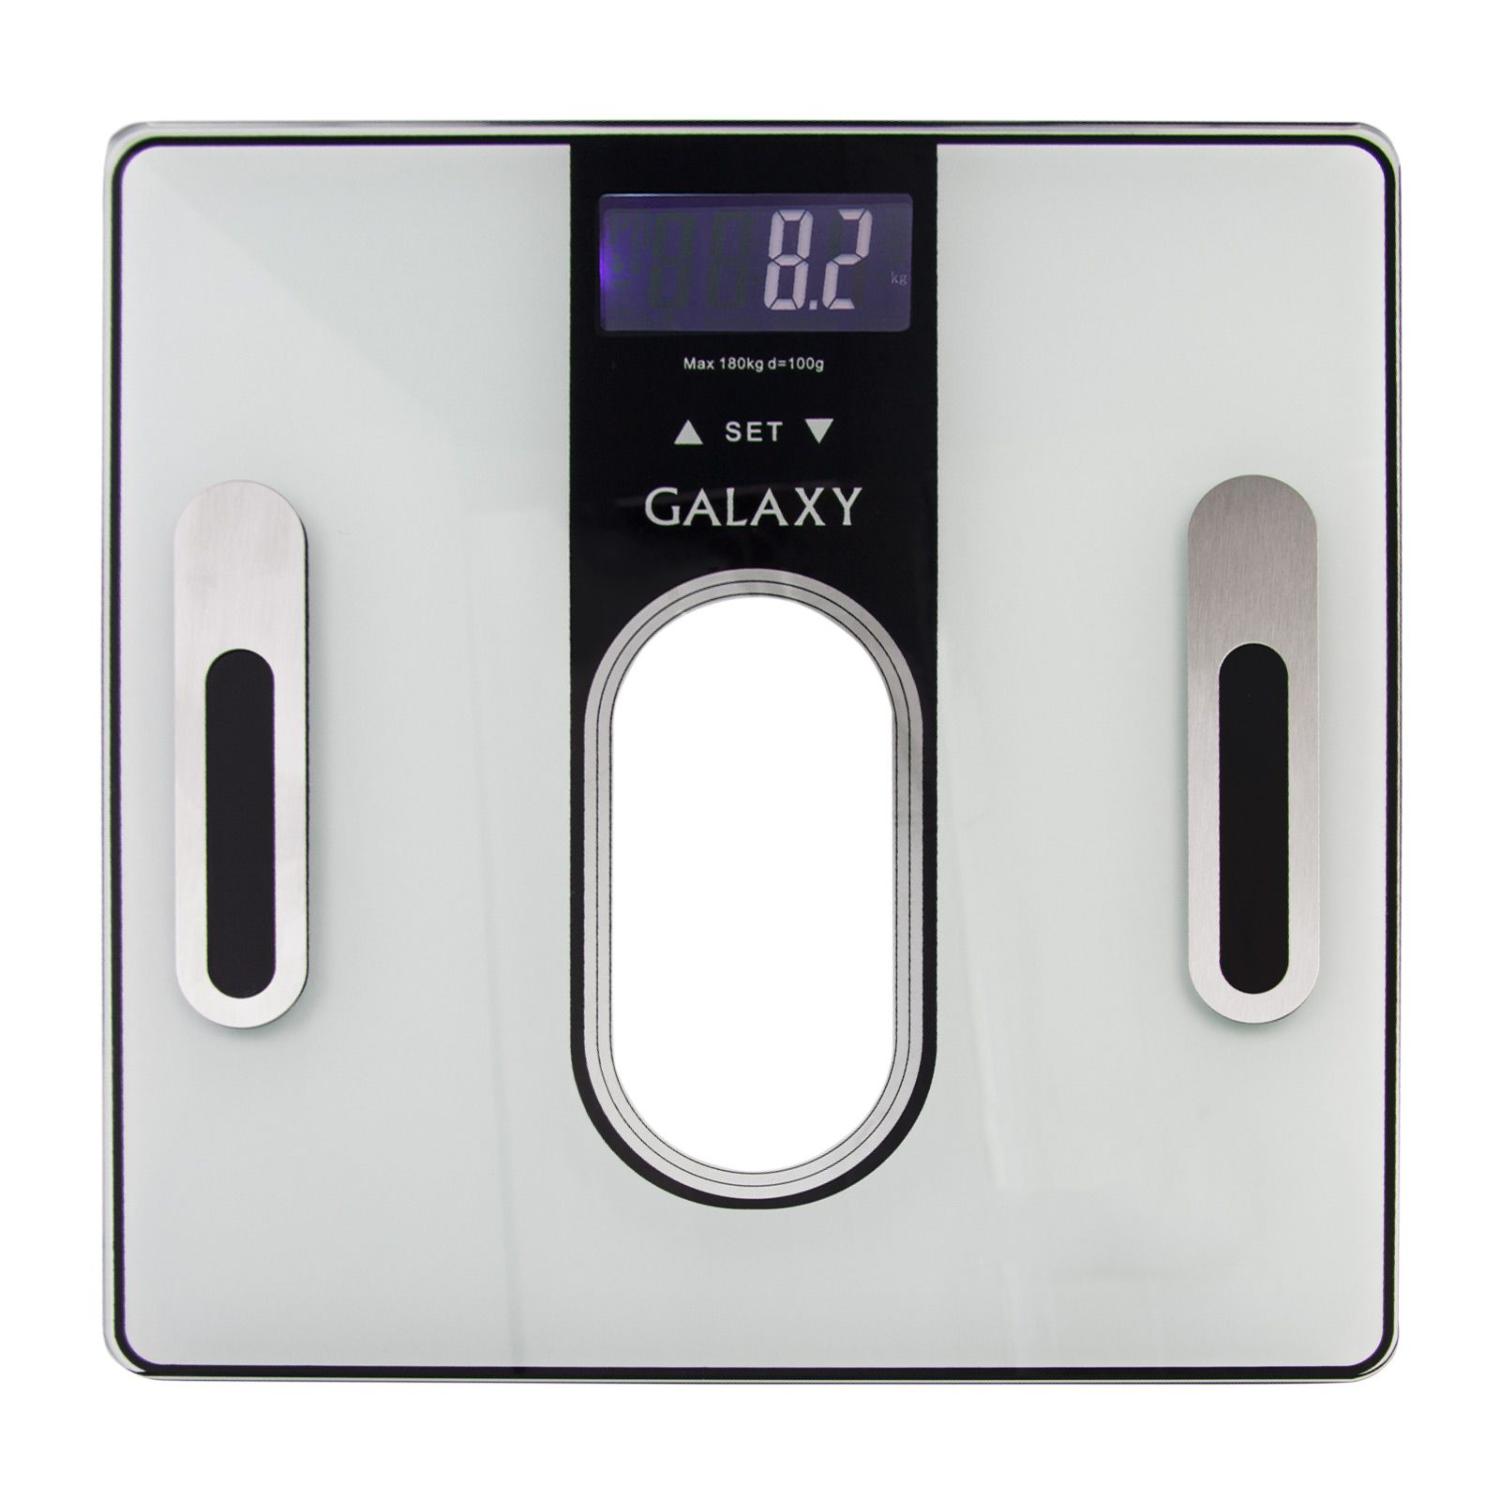 Весы многофункциональные электронные GALAXY GL 4852, максимально допустимый вес 180кг Артикул:гл4852